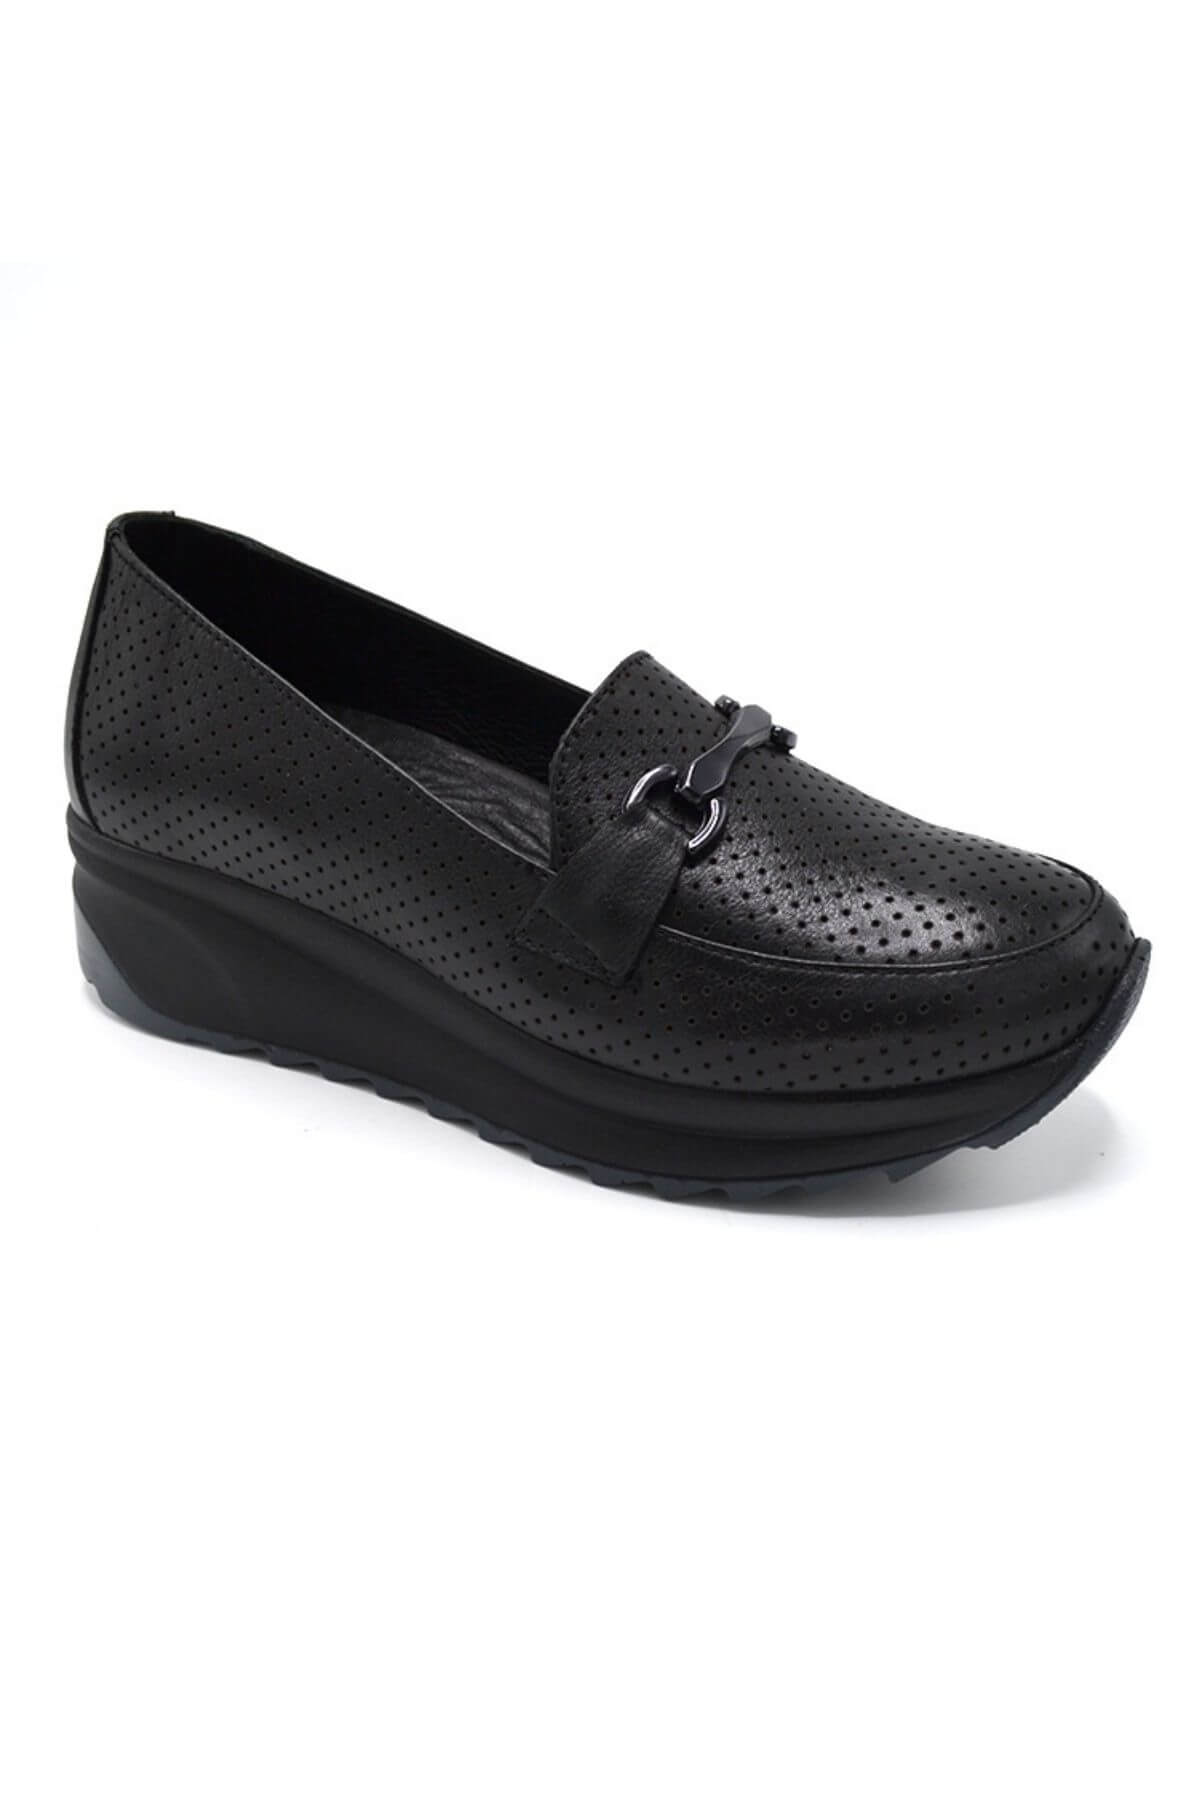 Kadın Dolgu Topuk Deri Ayakkabı Siyah 2310303Y - Thumbnail